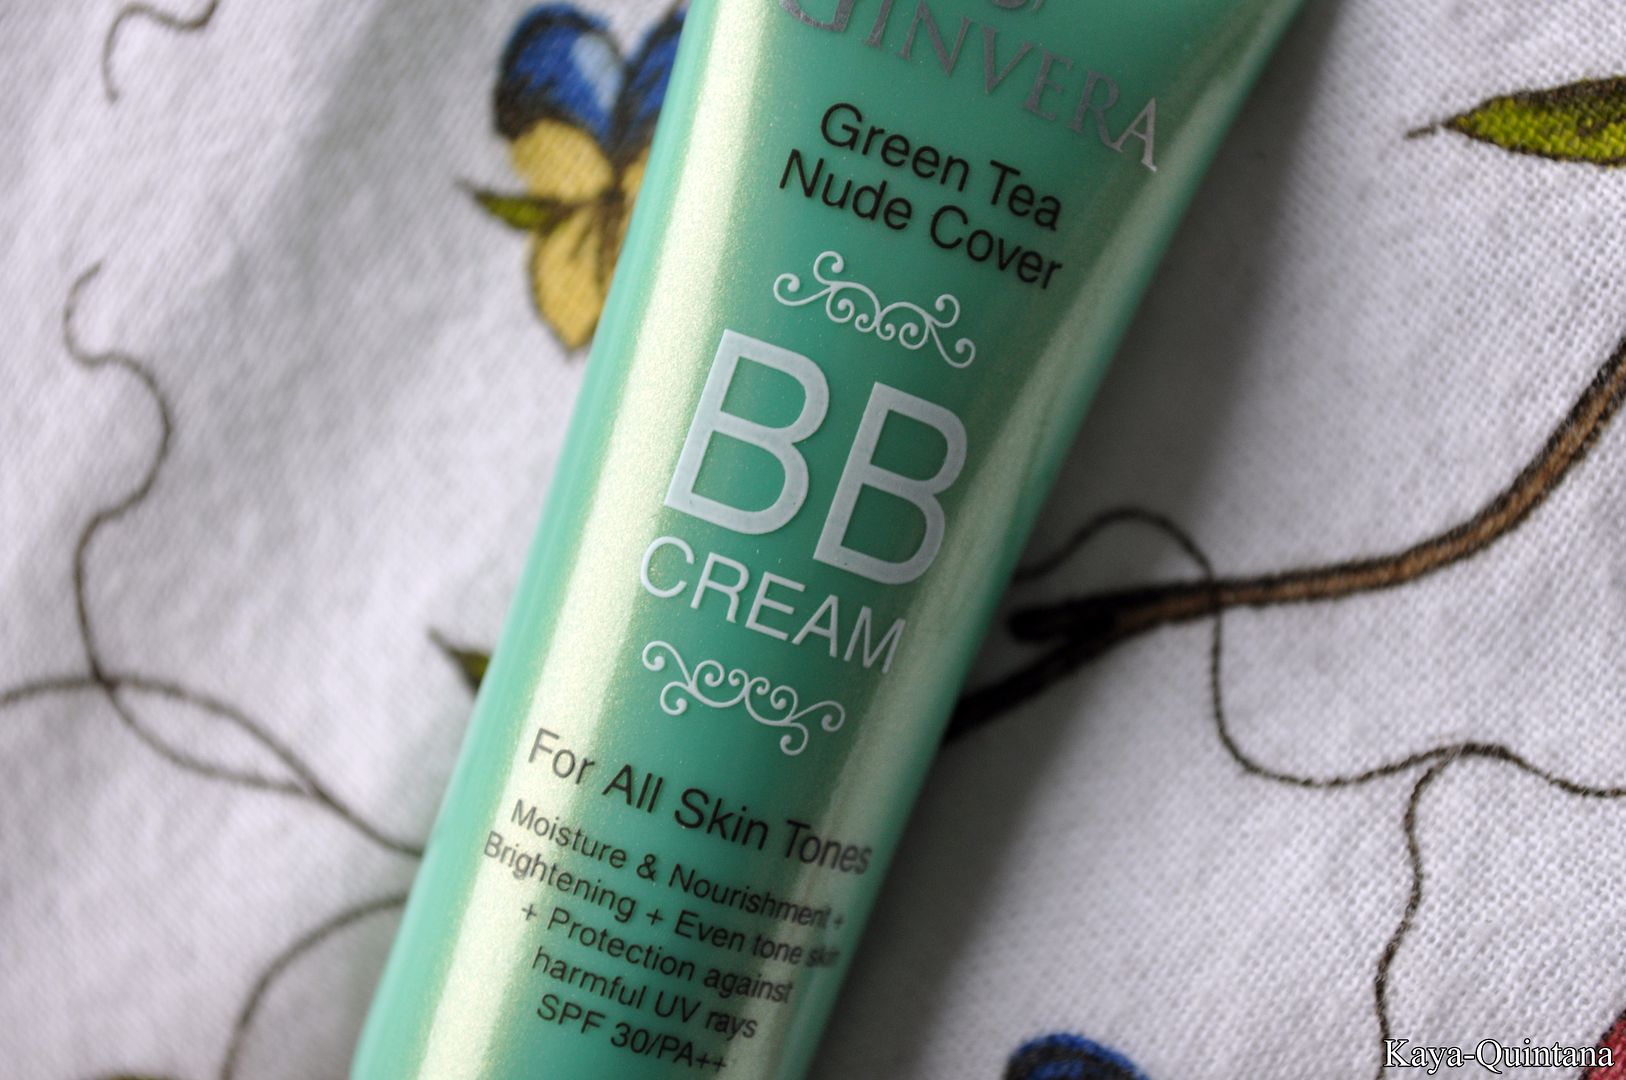 ginvera bb cream for all skin tones